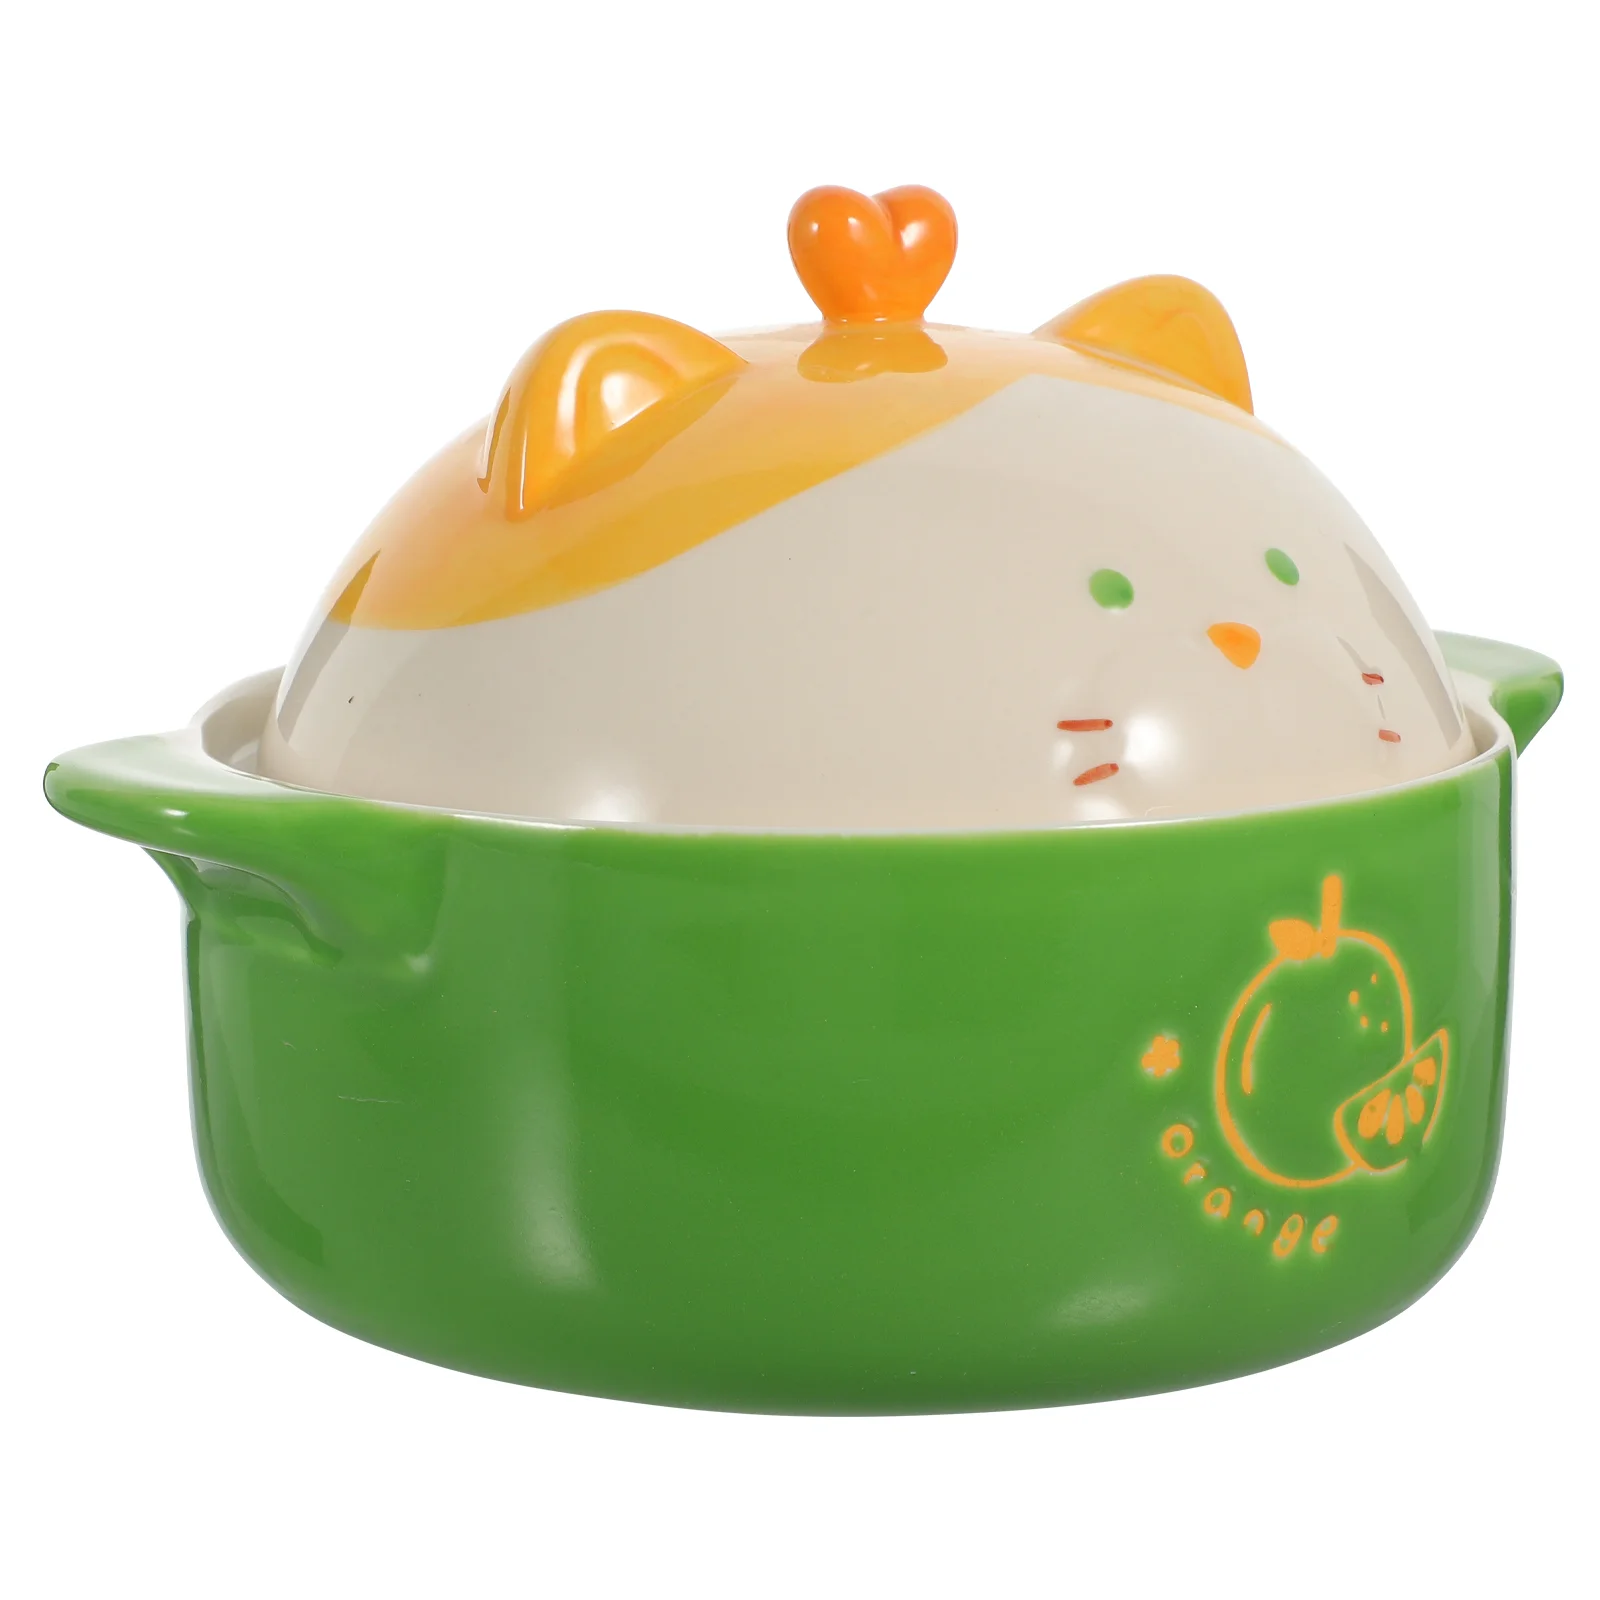 

Ceramic Bowl with Lid Noodles Soup Bowls Handles Cat Ramen Instant Japanese Cute Lids